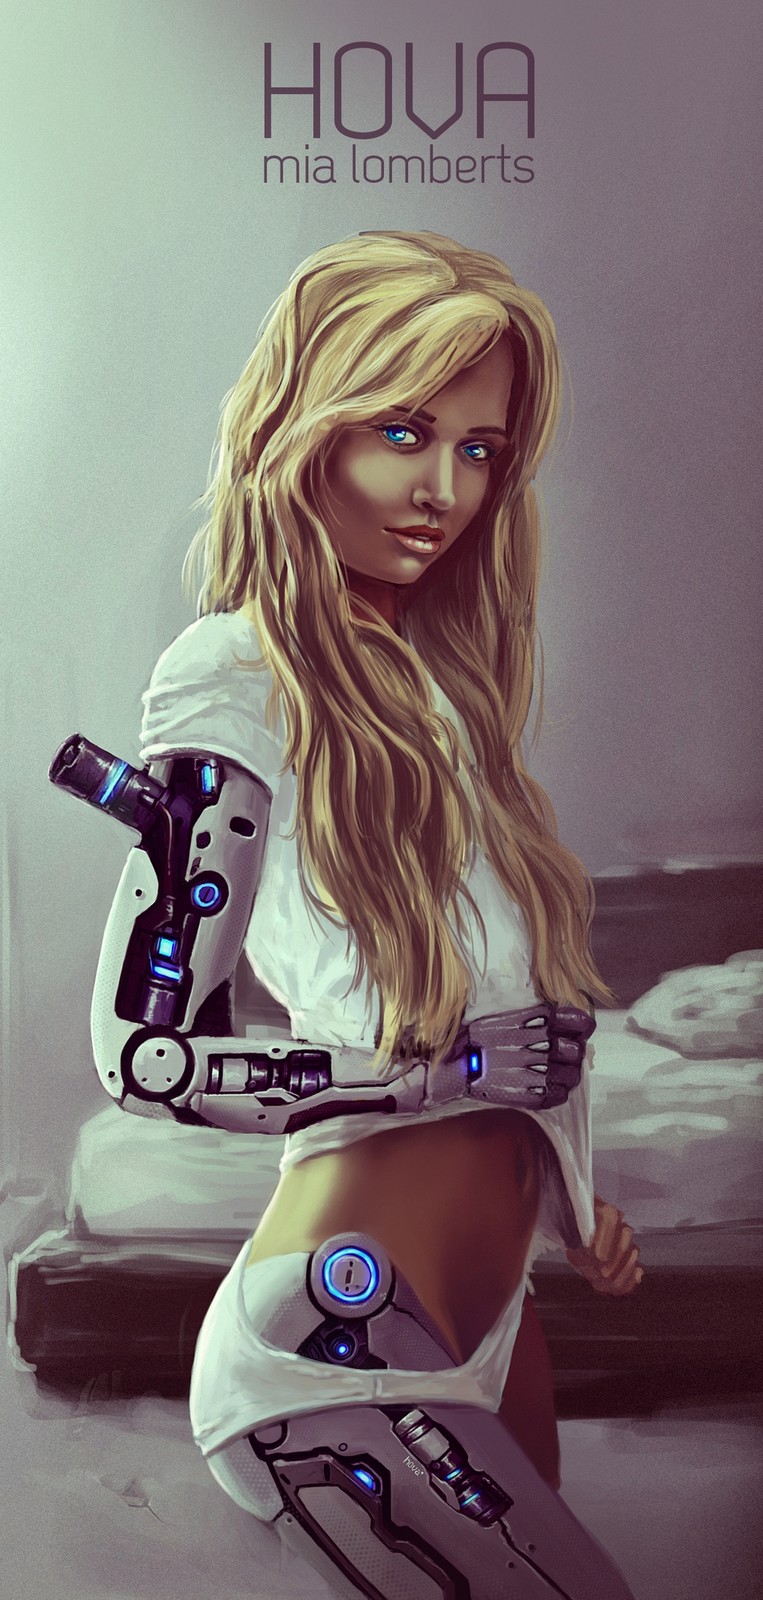 Голая девушка робот удивляет нестандартной красотой 